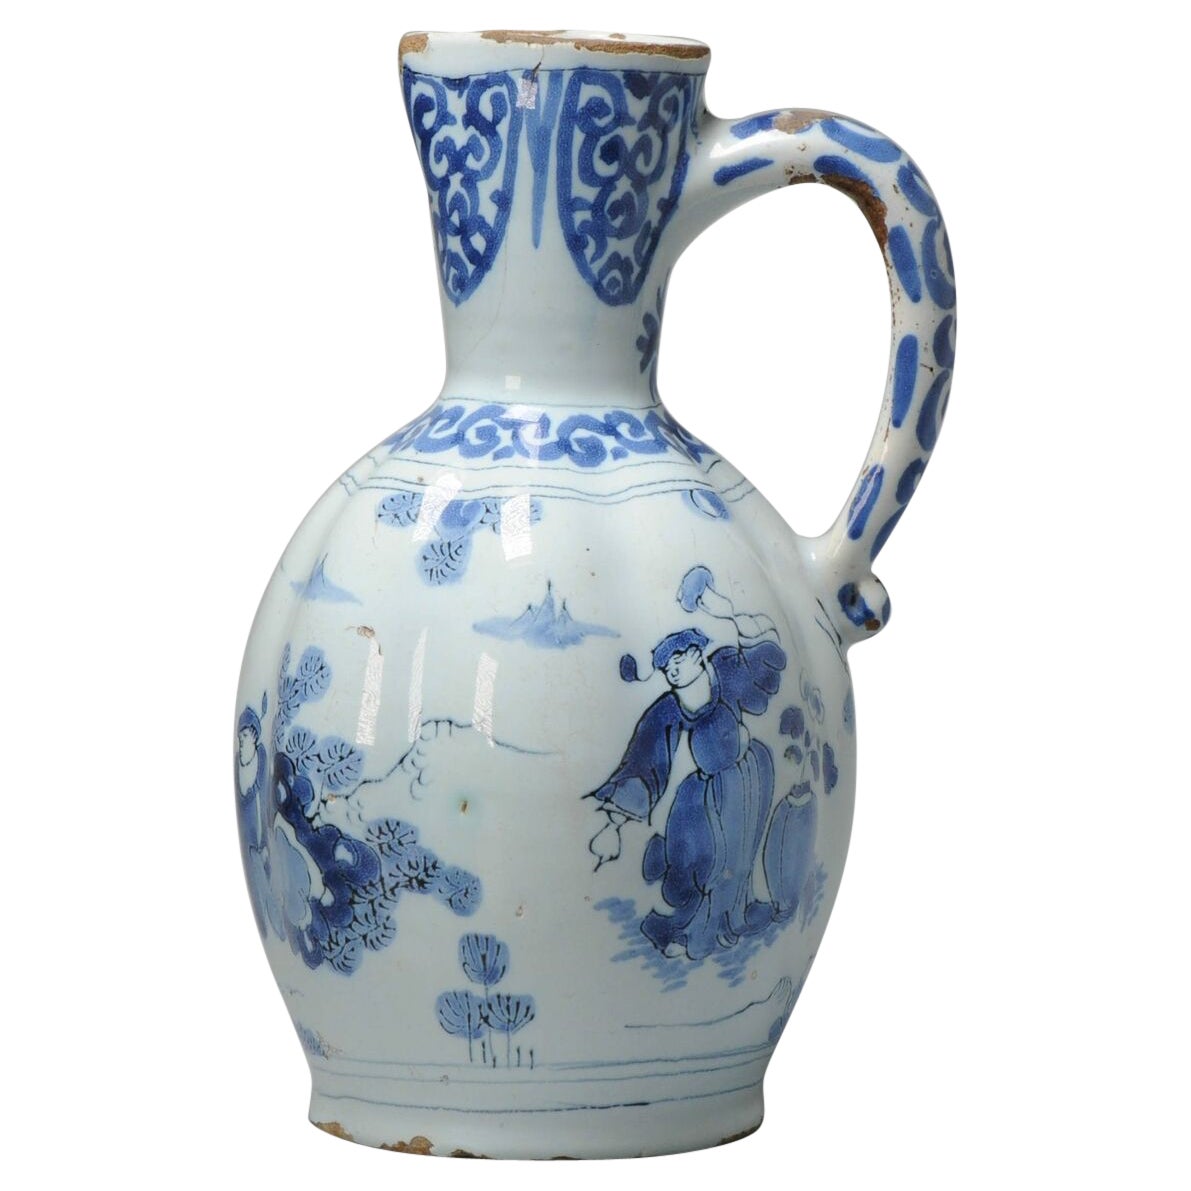 Vase à aiguière figurative en faïence de style transitionnel chinois en Delftware hollandais